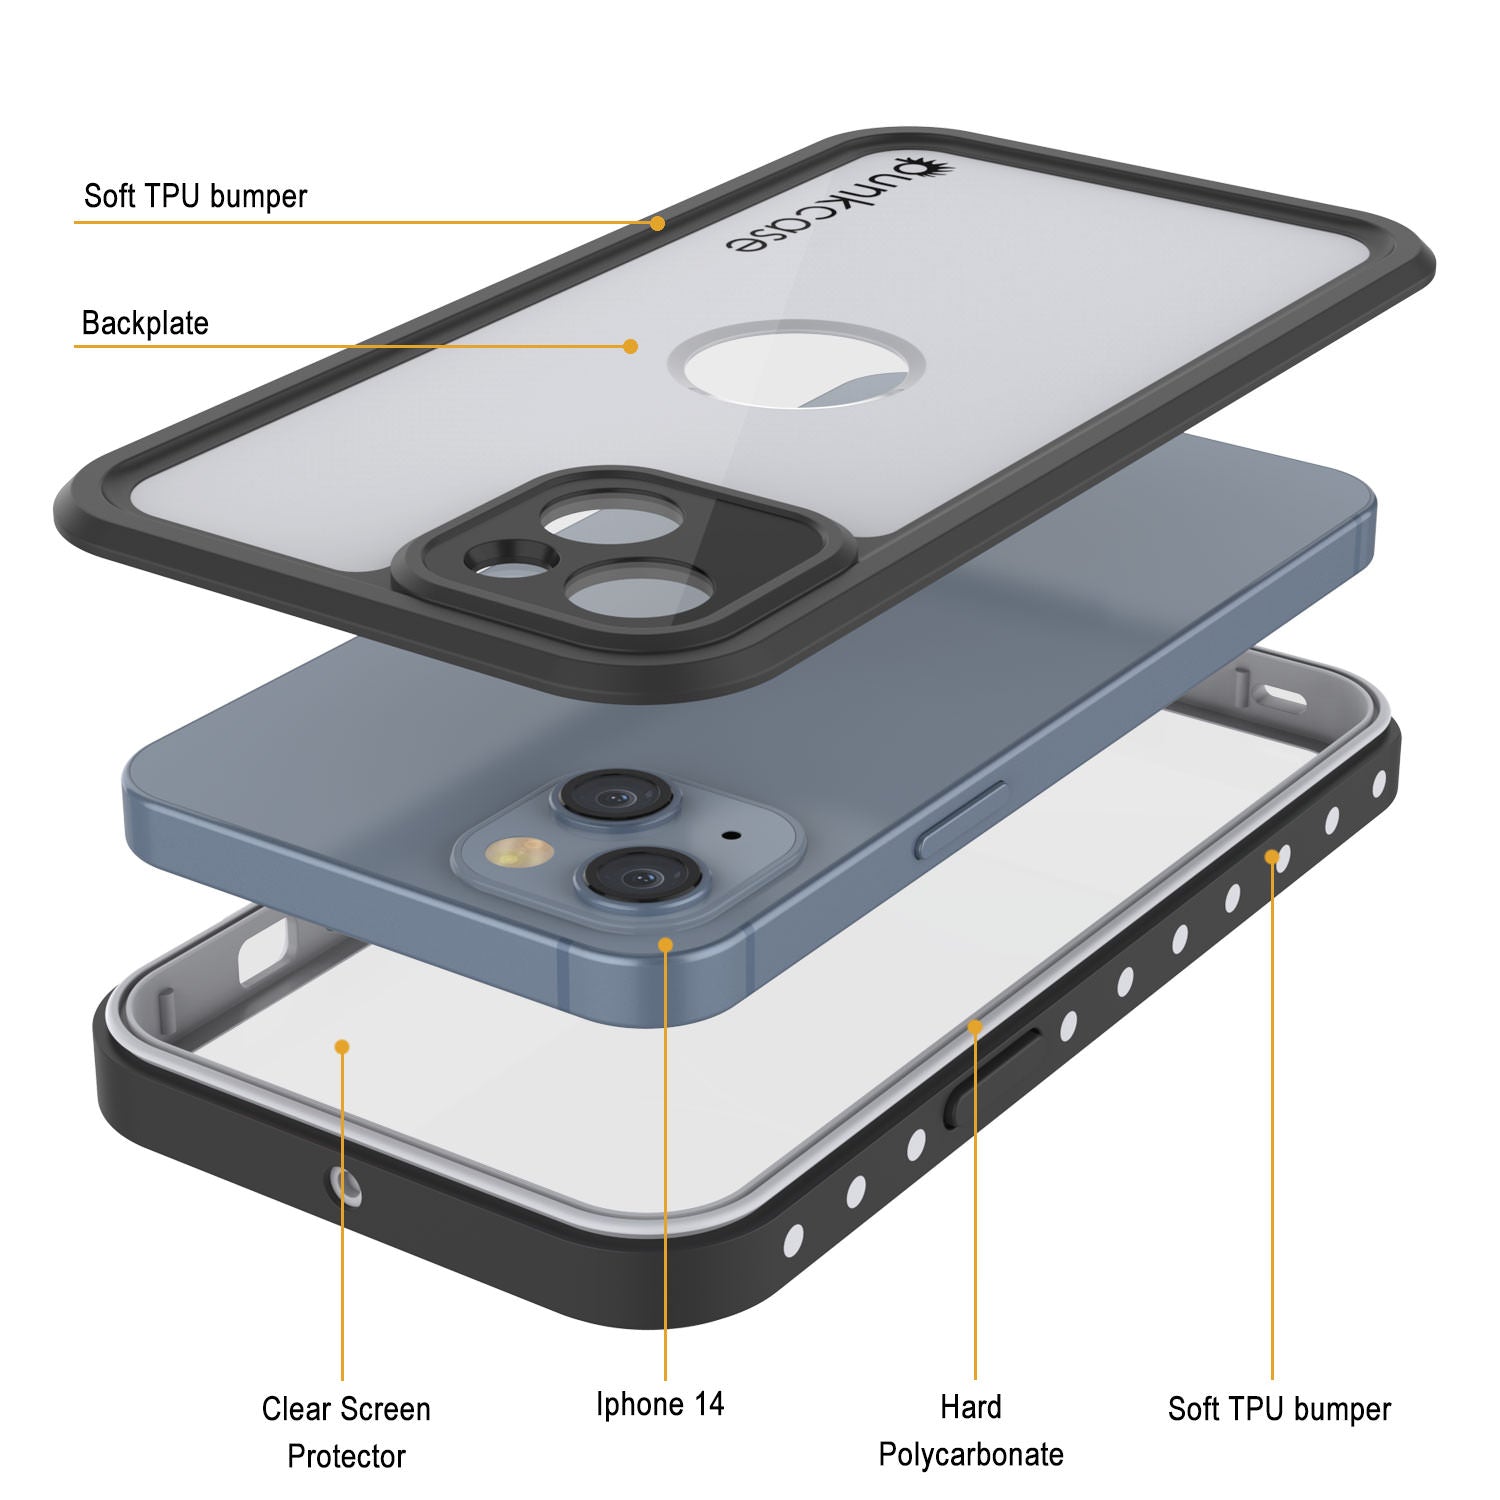 iPhone 14 Waterproof IP68 Case, Punkcase [White] [StudStar Series] [Slim Fit] [Dirtproof]